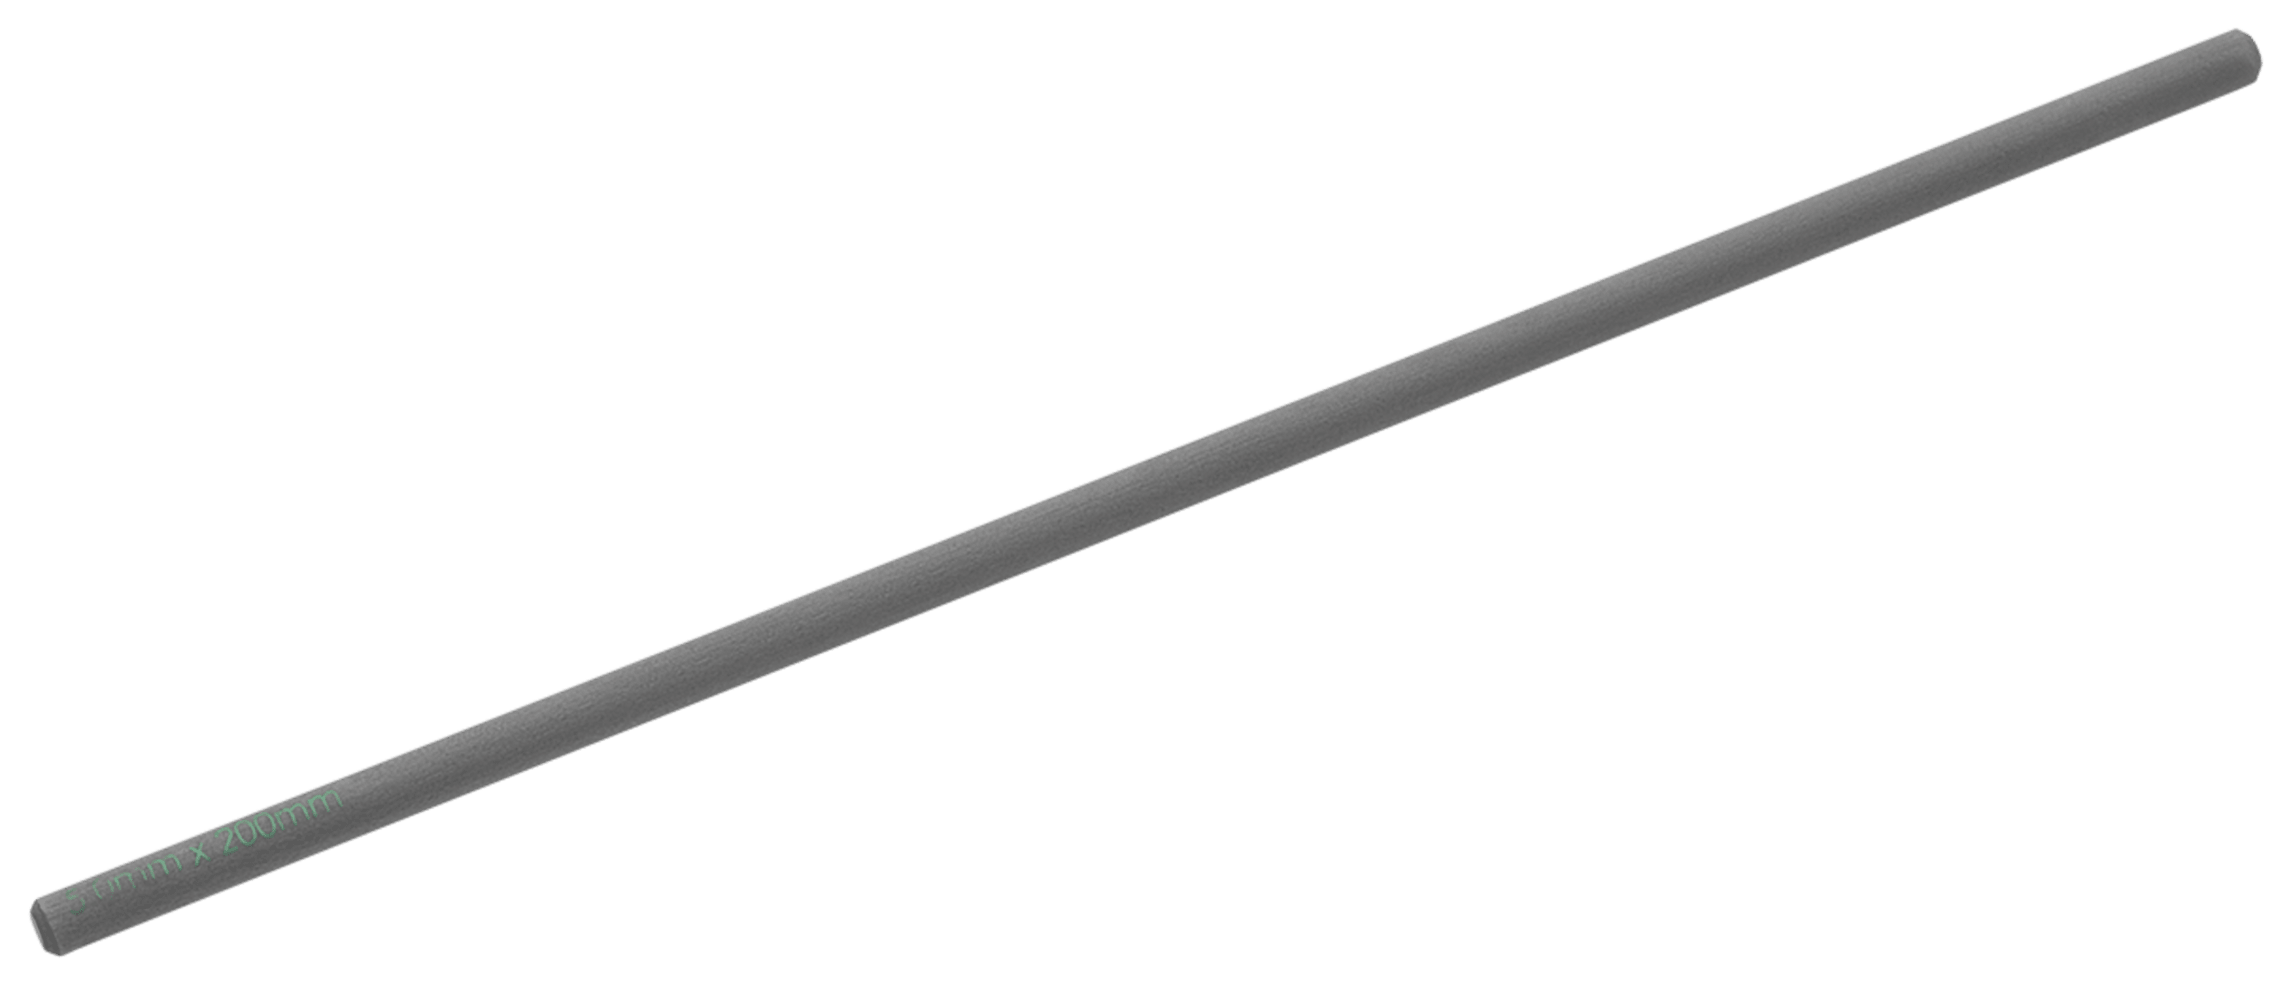 Carbon Fiber Rod, 5mm x 200mm